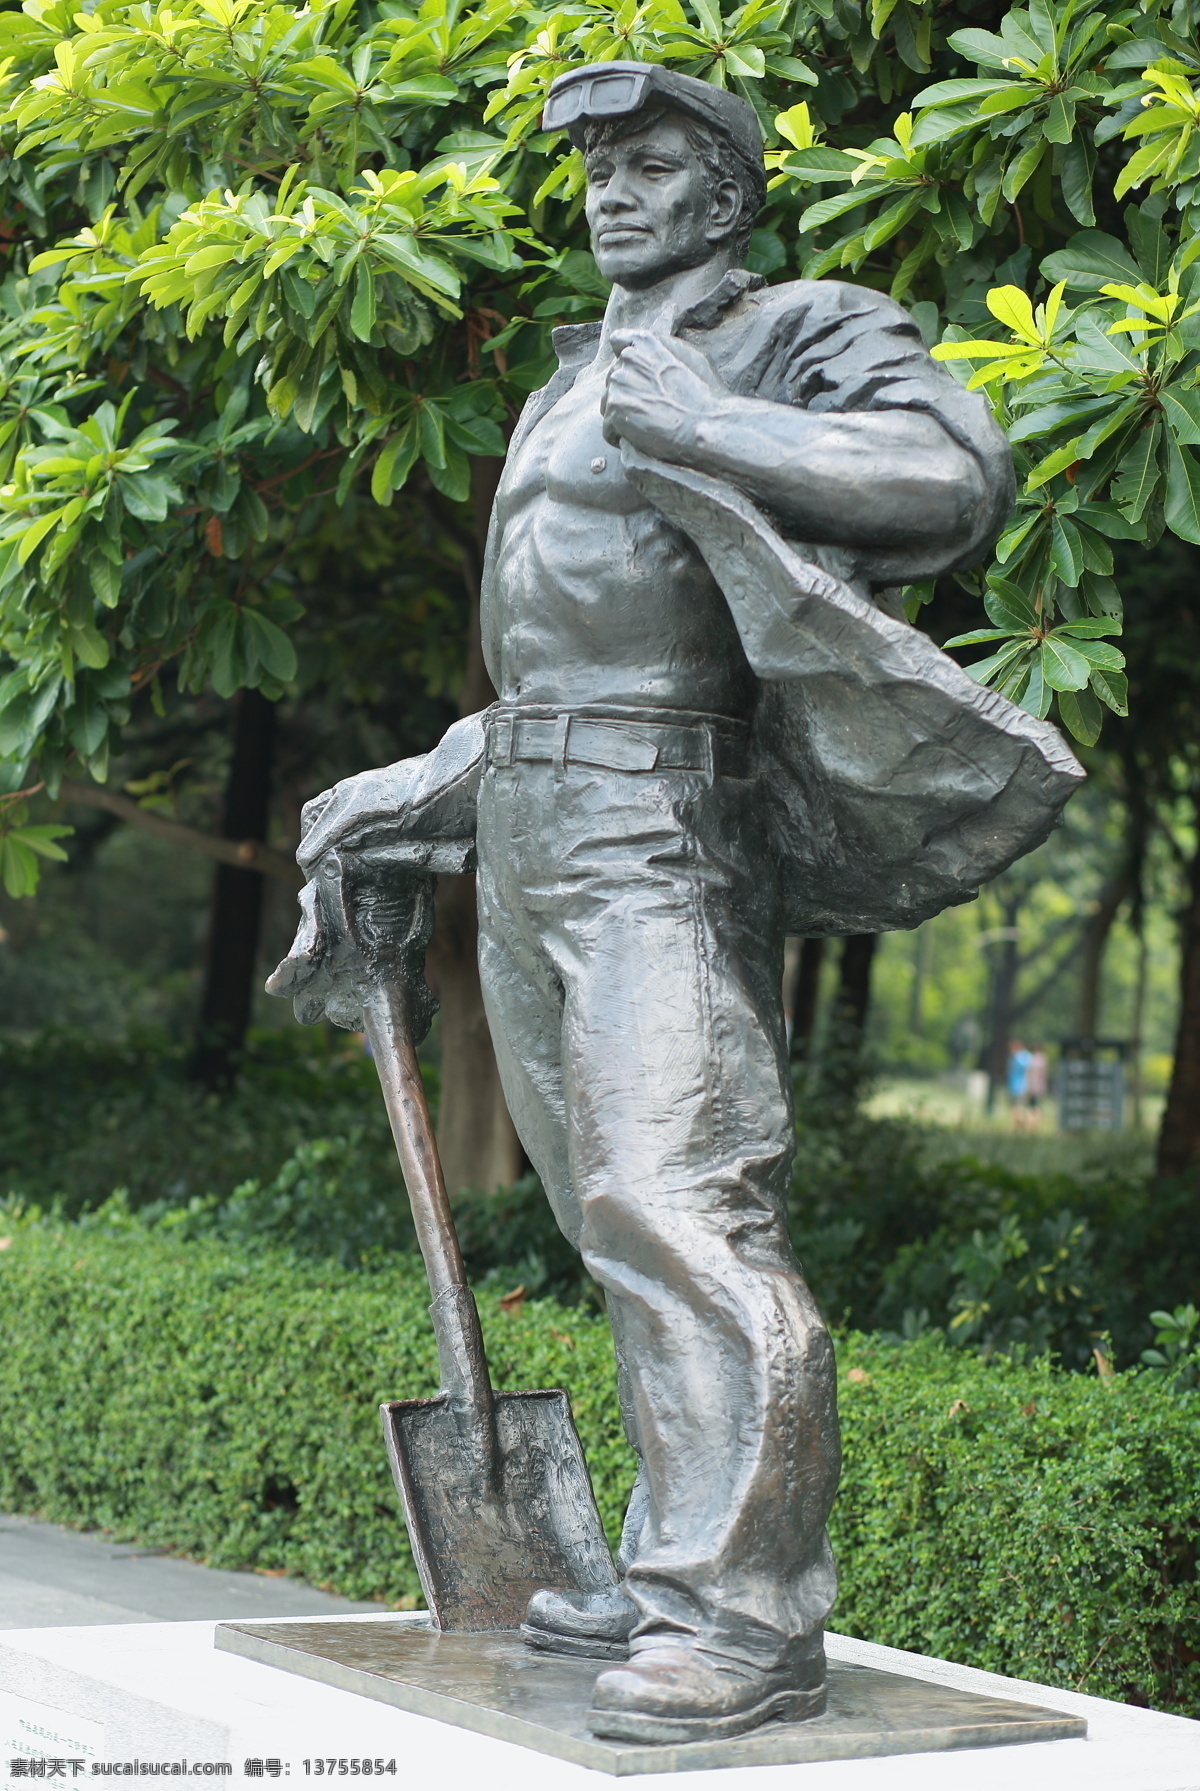 工人雕塑 雕塑 工人 中年男子 挖地工人 工人阶级 建筑园林